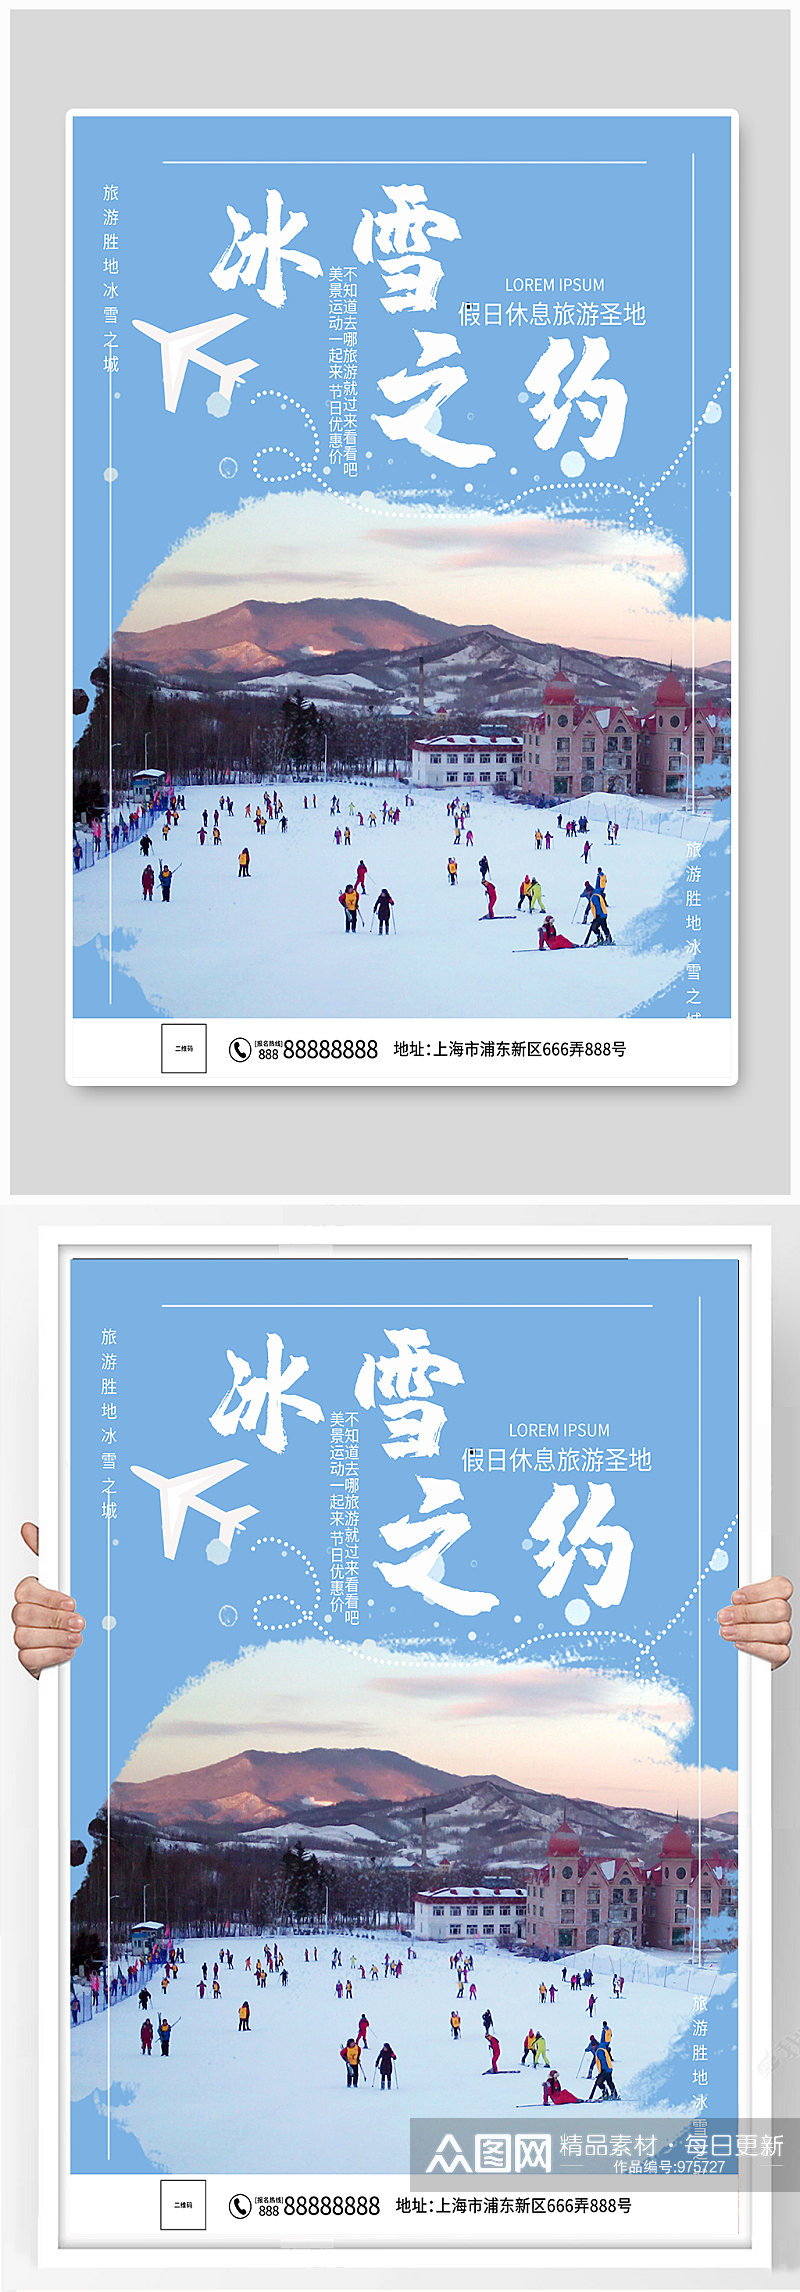 滑雪运动宣传海报素材